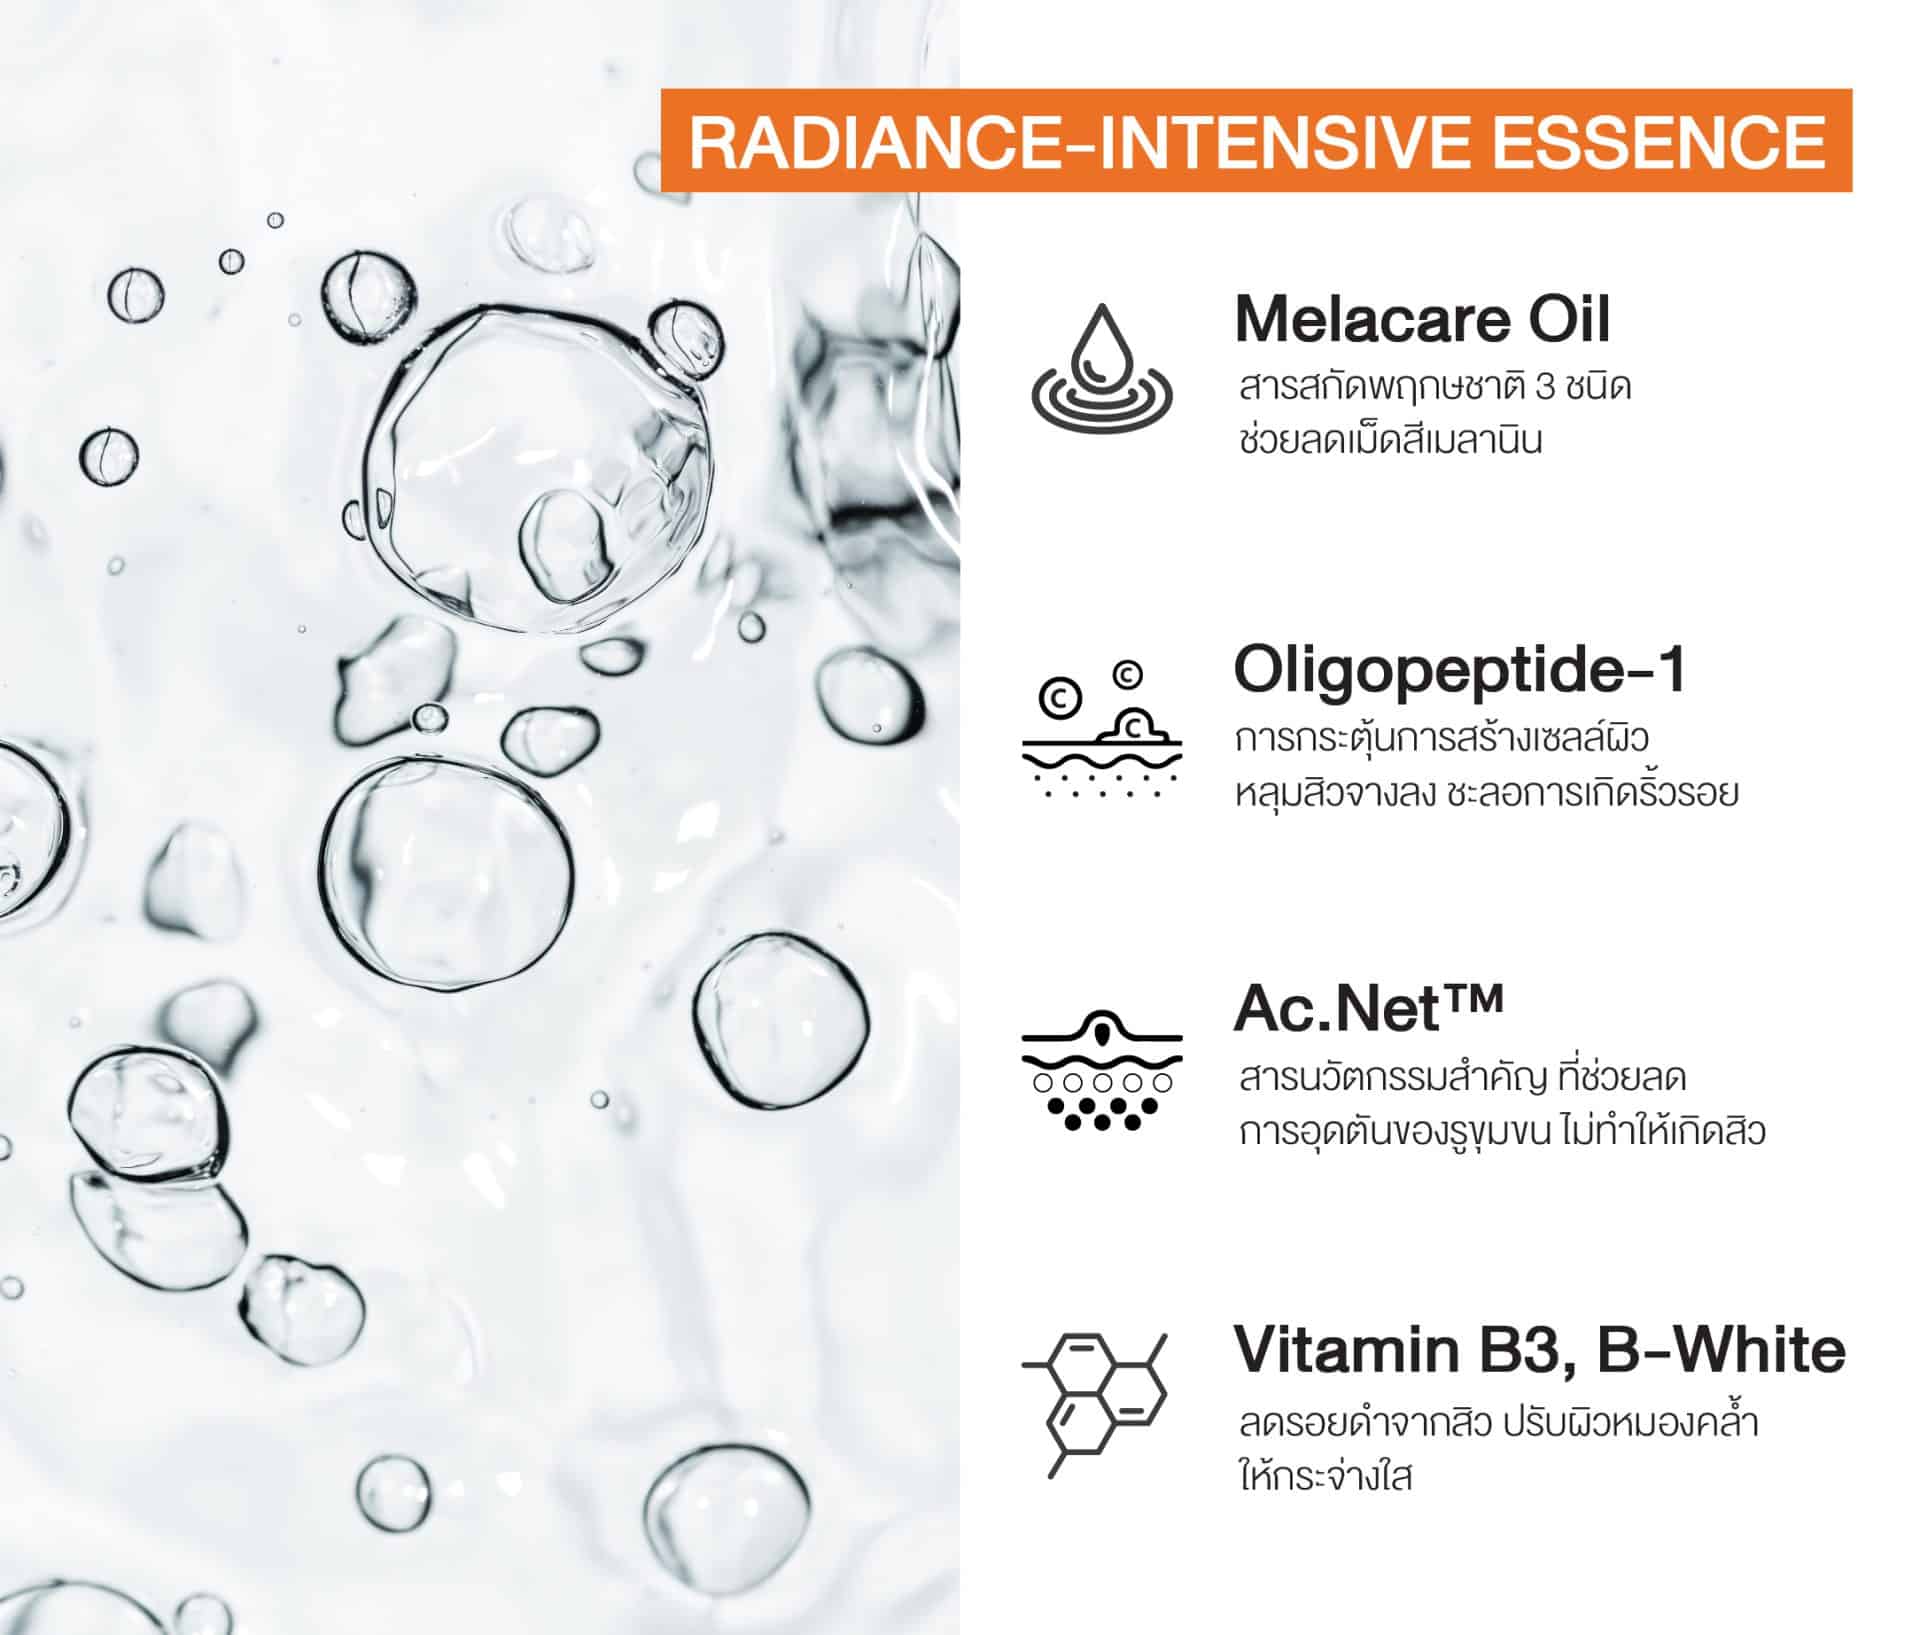 (ซื้อ 1 ฟรี 1) เอสเซนส์ Radiance-Intensive Essence (เลือกรับฟรี Multi-Protection Sunscreen SPF50+/PA++++ หรือ Private Enriched Serum) | AquaPlus Thailand